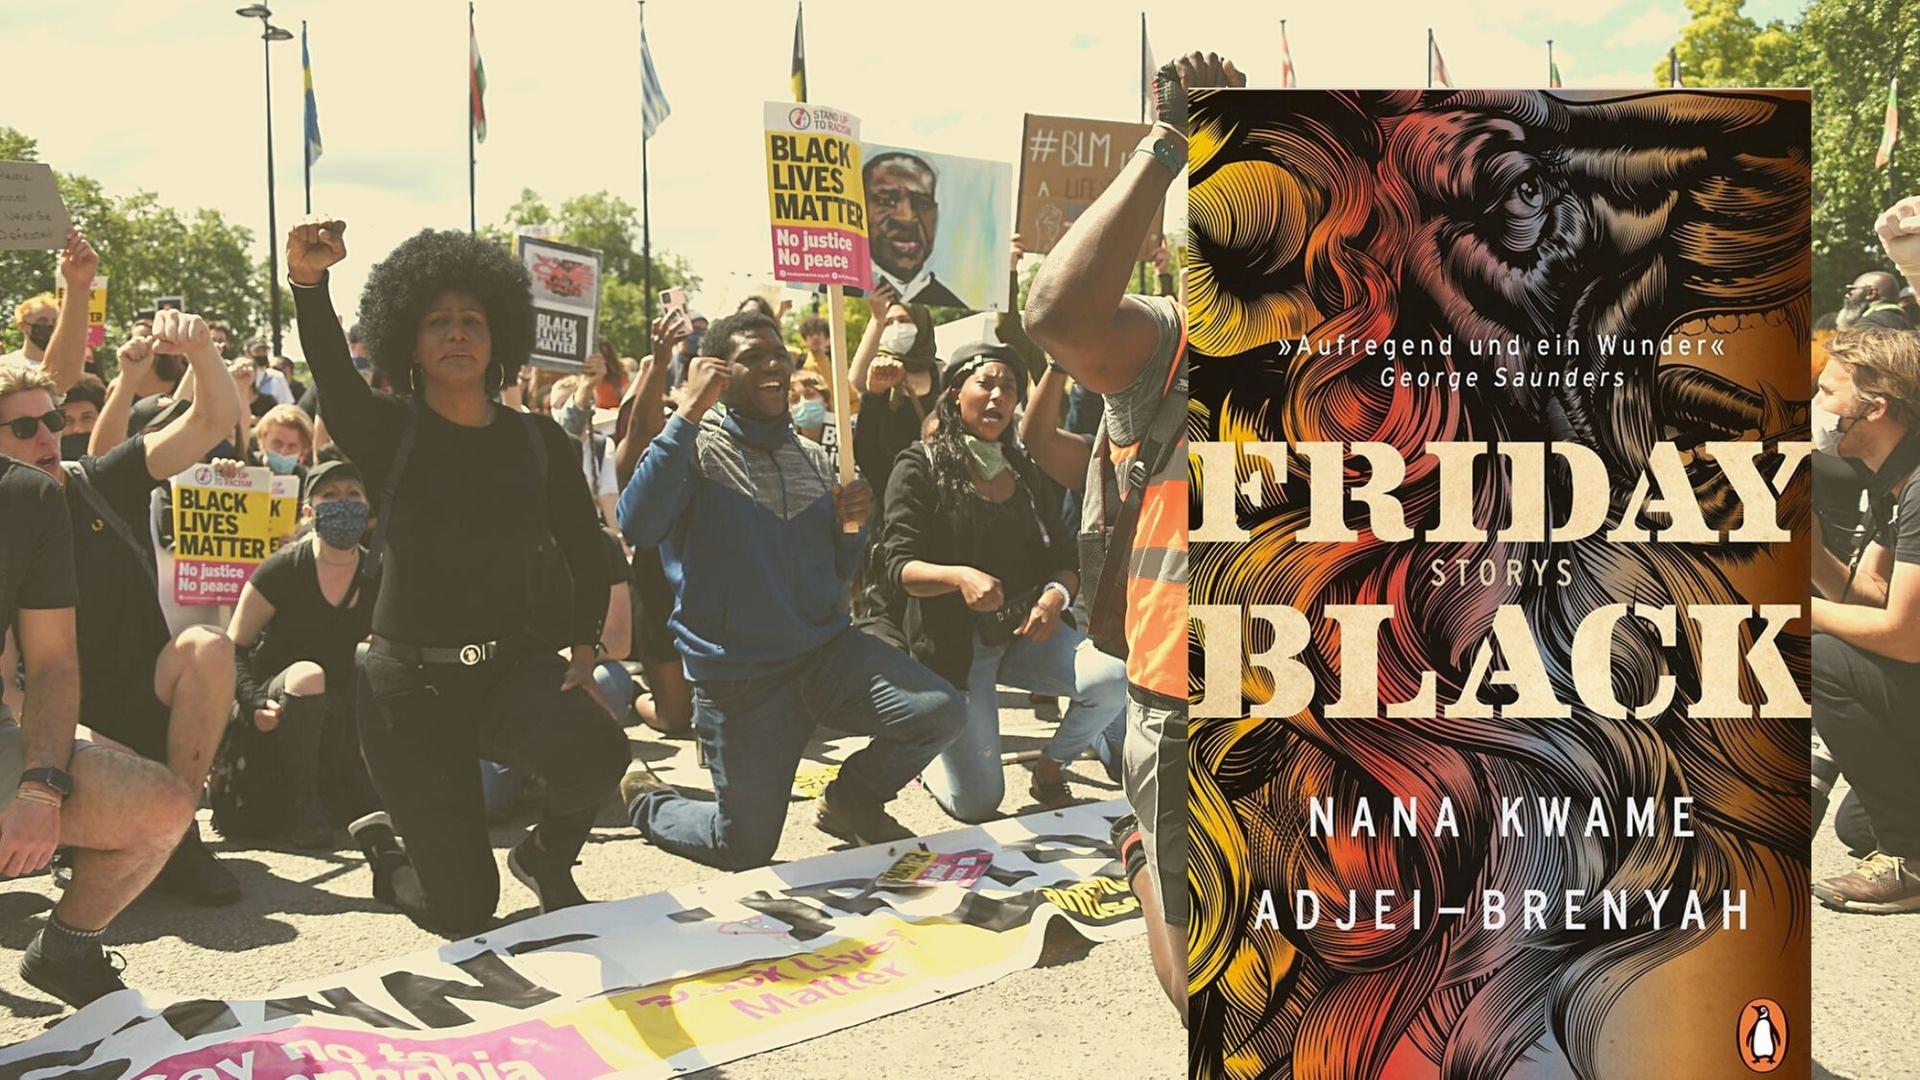 Buchcover "Friday Black. Stories" von Nana Kwame Adjei-Brenyah. (Penguin Verlag) Hintergrundbild: Mitglieder der "Black Lives Matter" Bewegung knien bei einer Demonstration in London. (dpa)